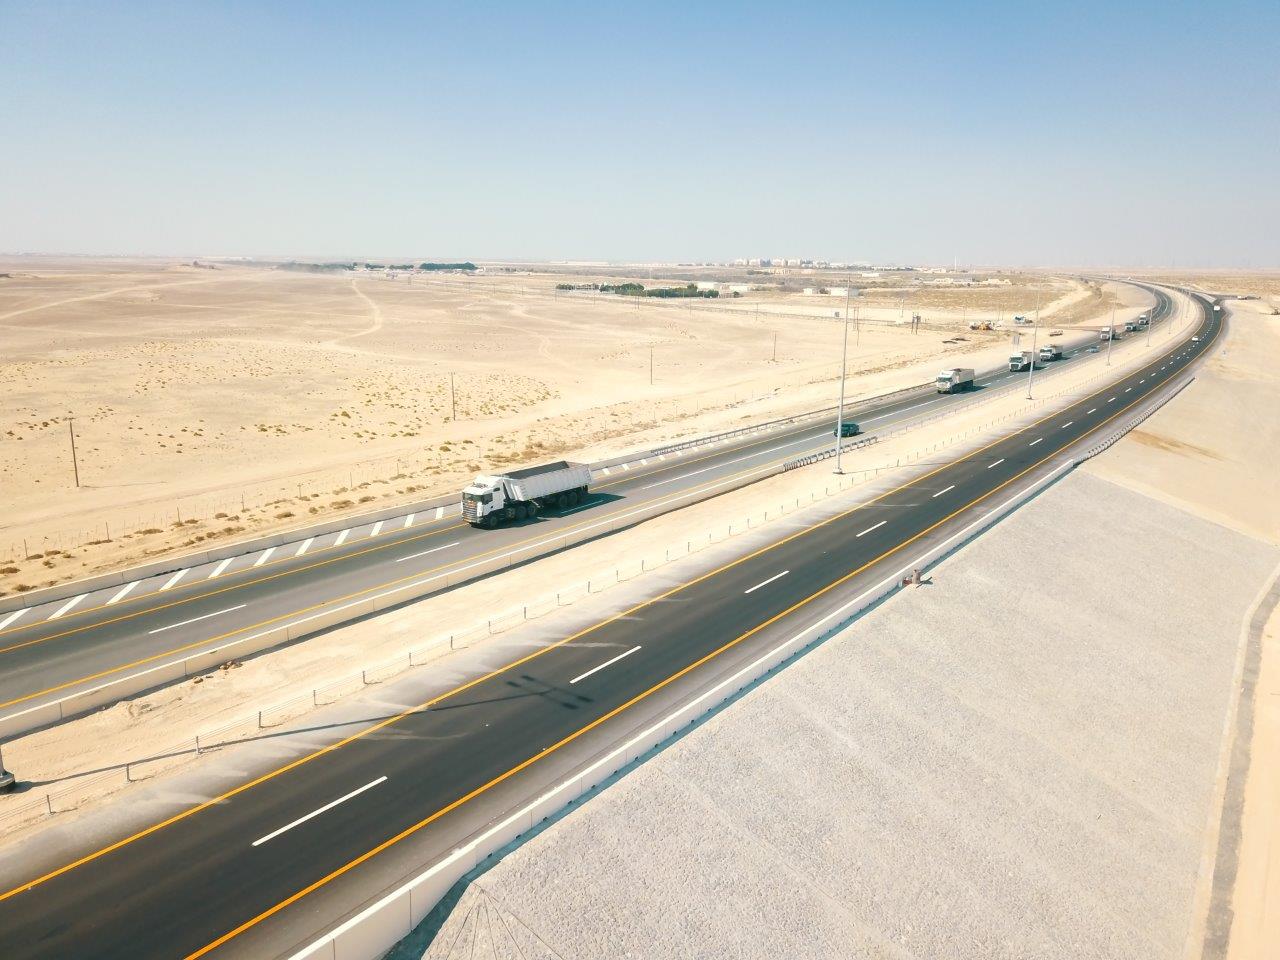 النقل المتكامل ومساندة ينجزان مشروع تطوير طريق سيح شعيب -الفاية بقيمة 100 مليون درهم